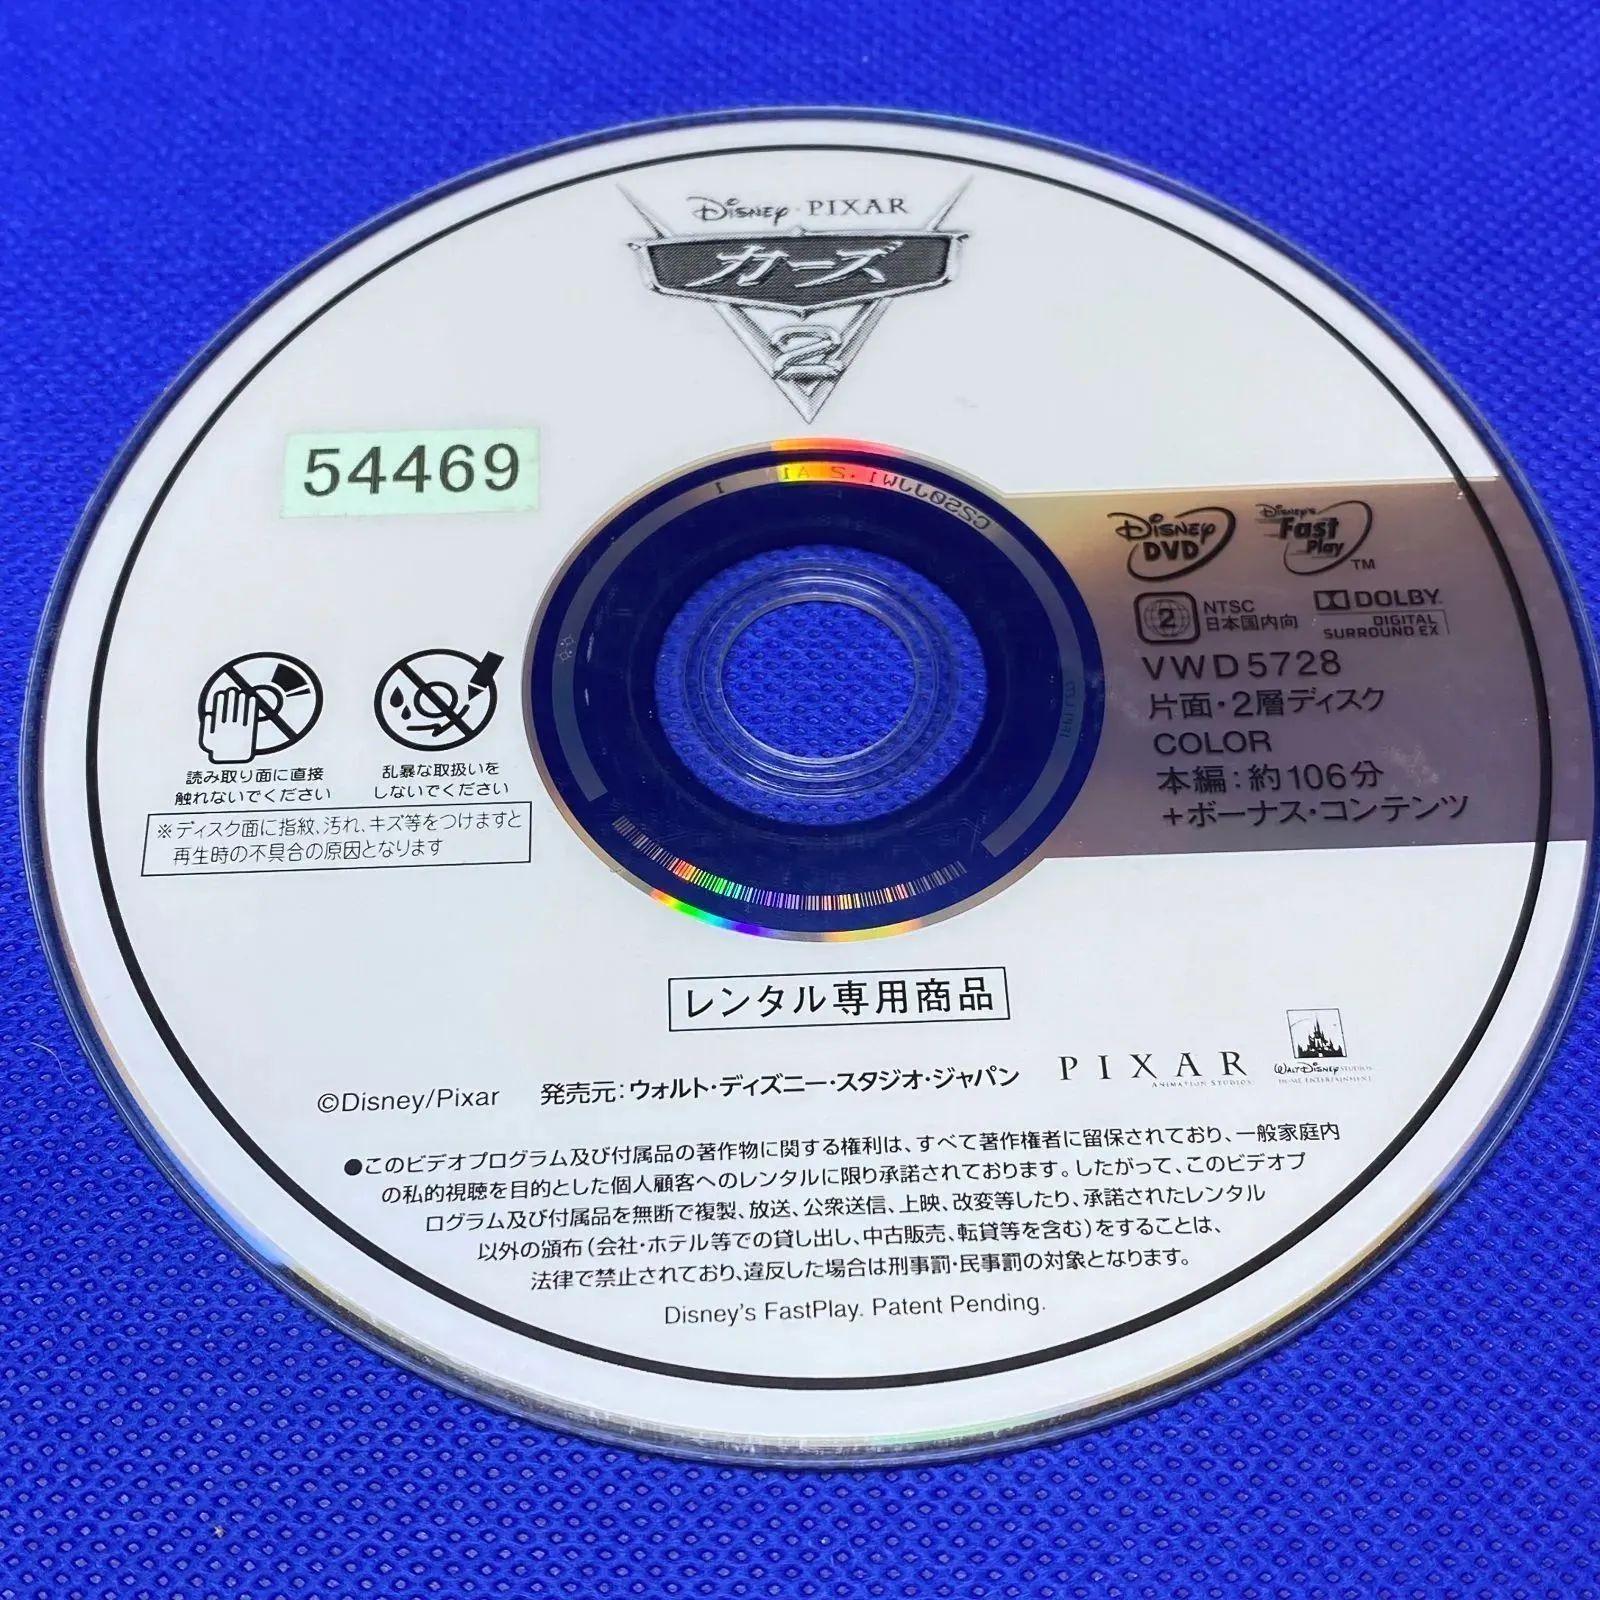 カーズ 2 レンタル落ち  DVD ディズニー